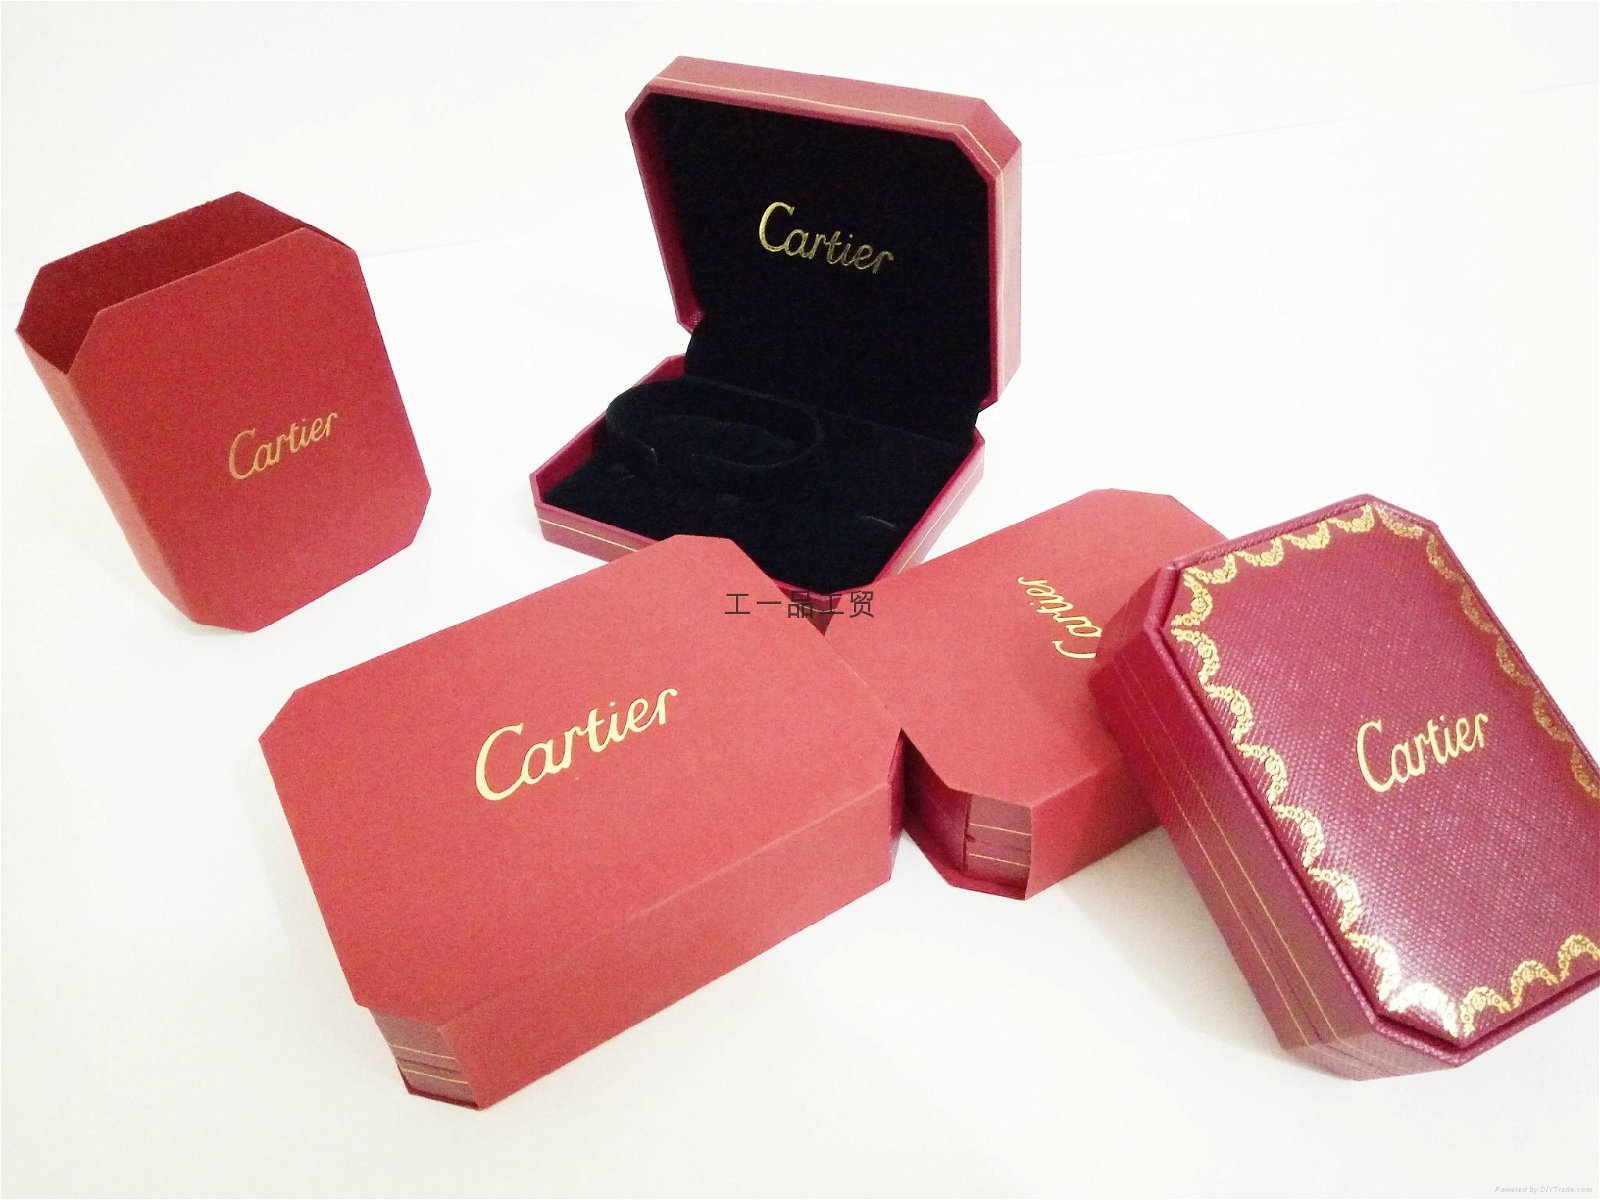 Cartier star jewelry box 2